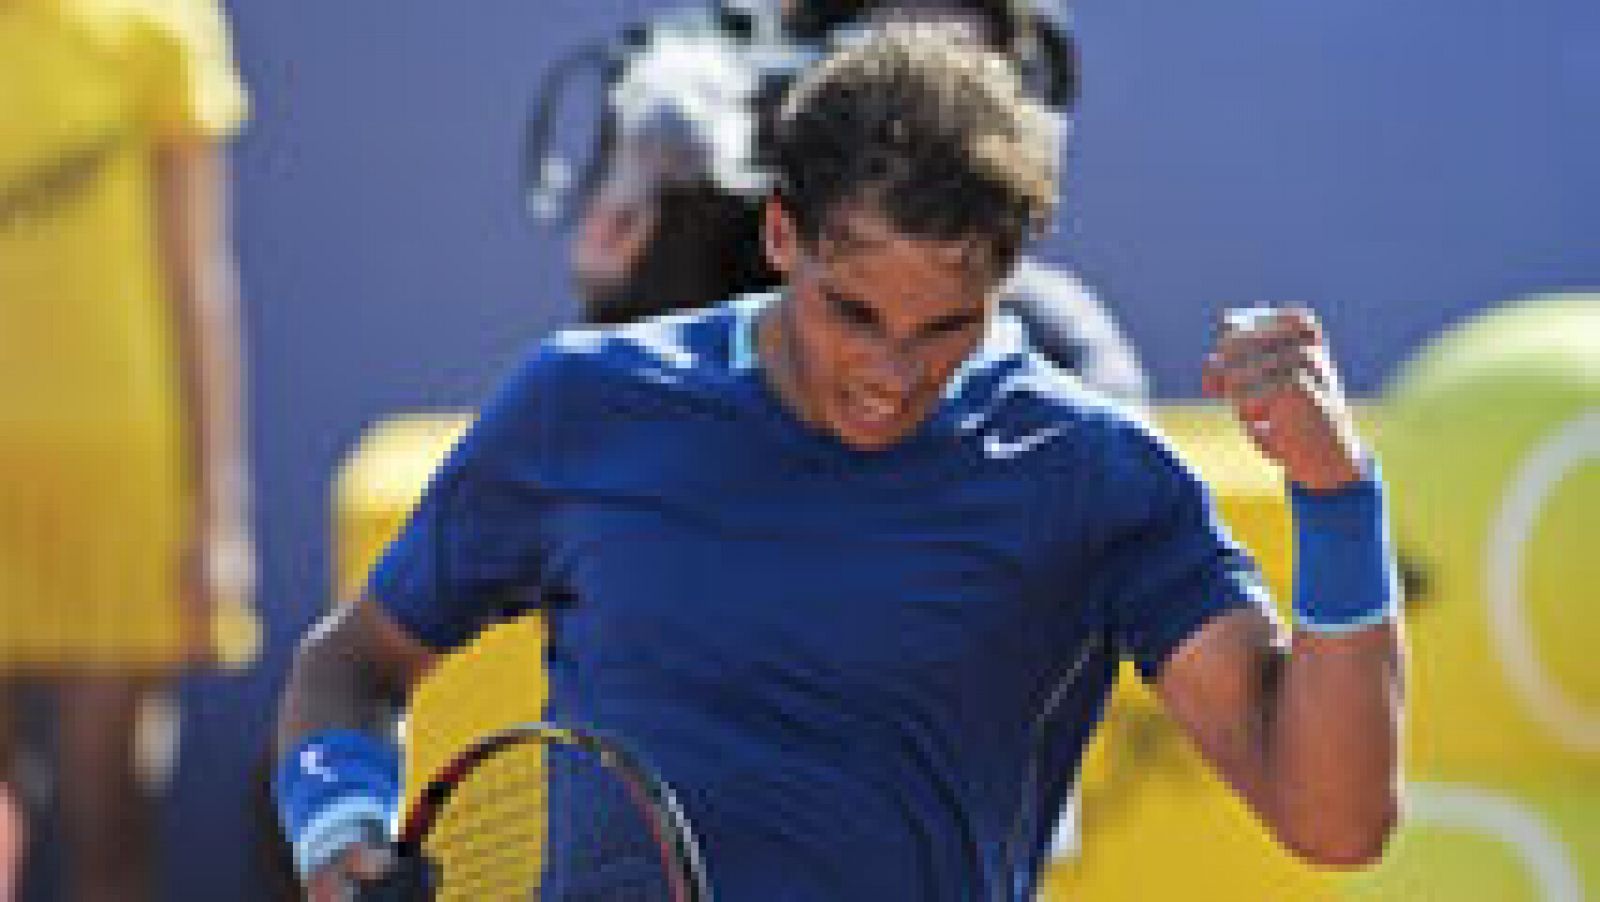 Rafa Nadal debuta con victoria sobre Albert Ramos en el Trofeo Conde de Godó, donde defiende título. No hubo, pues, revancha de los cuartos de final de 2013, pues el número uno del mundo y del torneo impuso su condición. Ahora le espera en octavos el